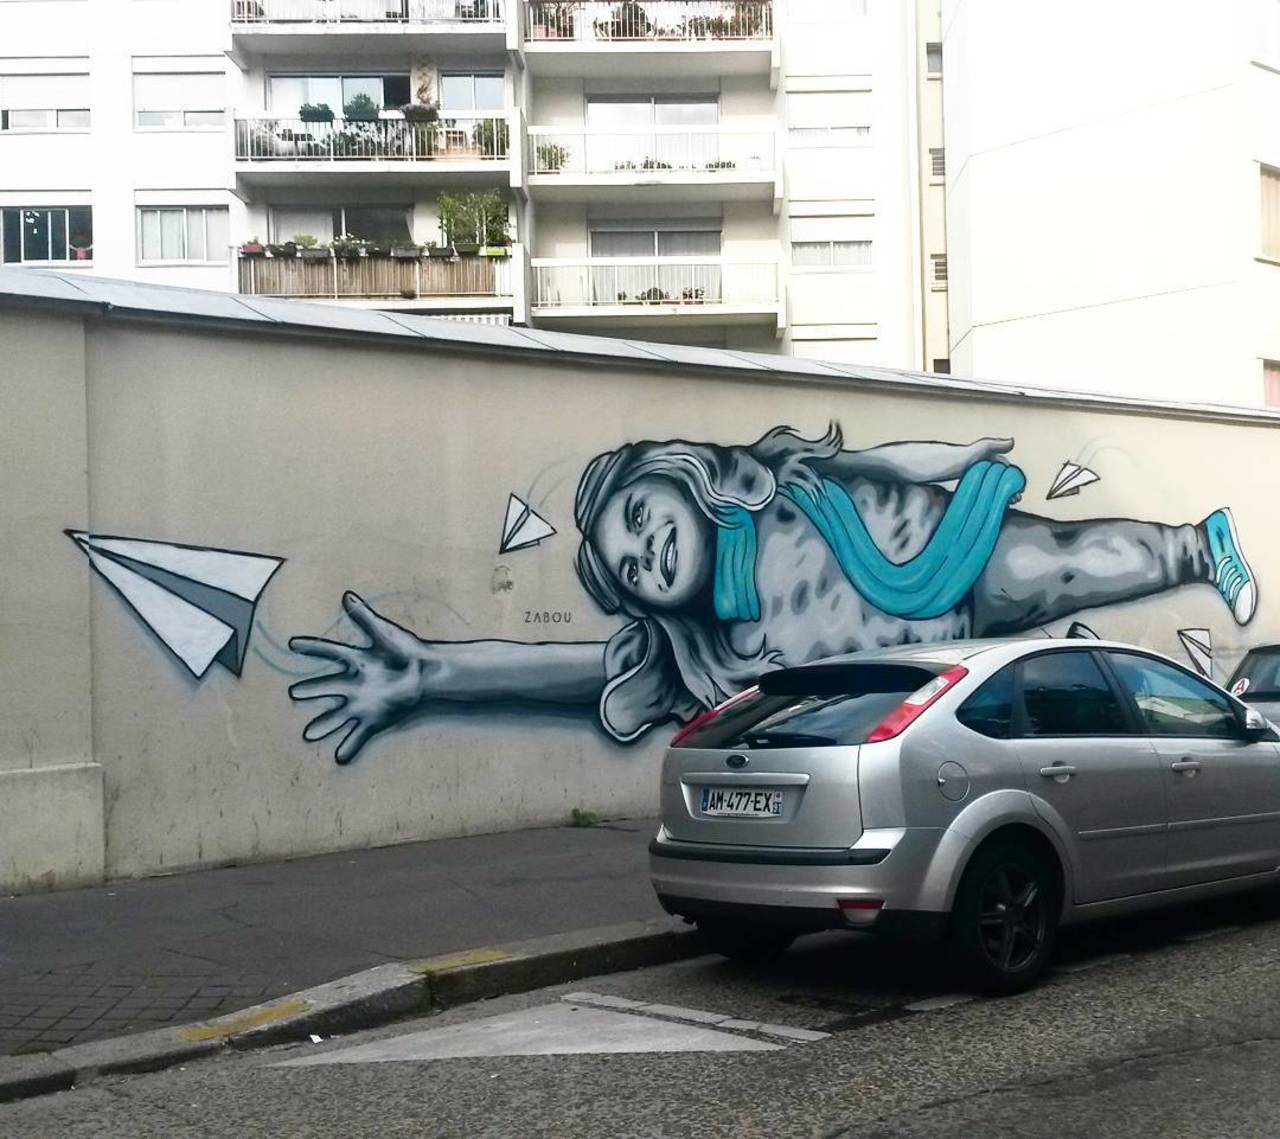 RT @circumjacent_fr: #Paris #graffiti photo by @princessepepett http://ift.tt/1N6kJdj #StreetArt http://t.co/R1iLjgx7UT